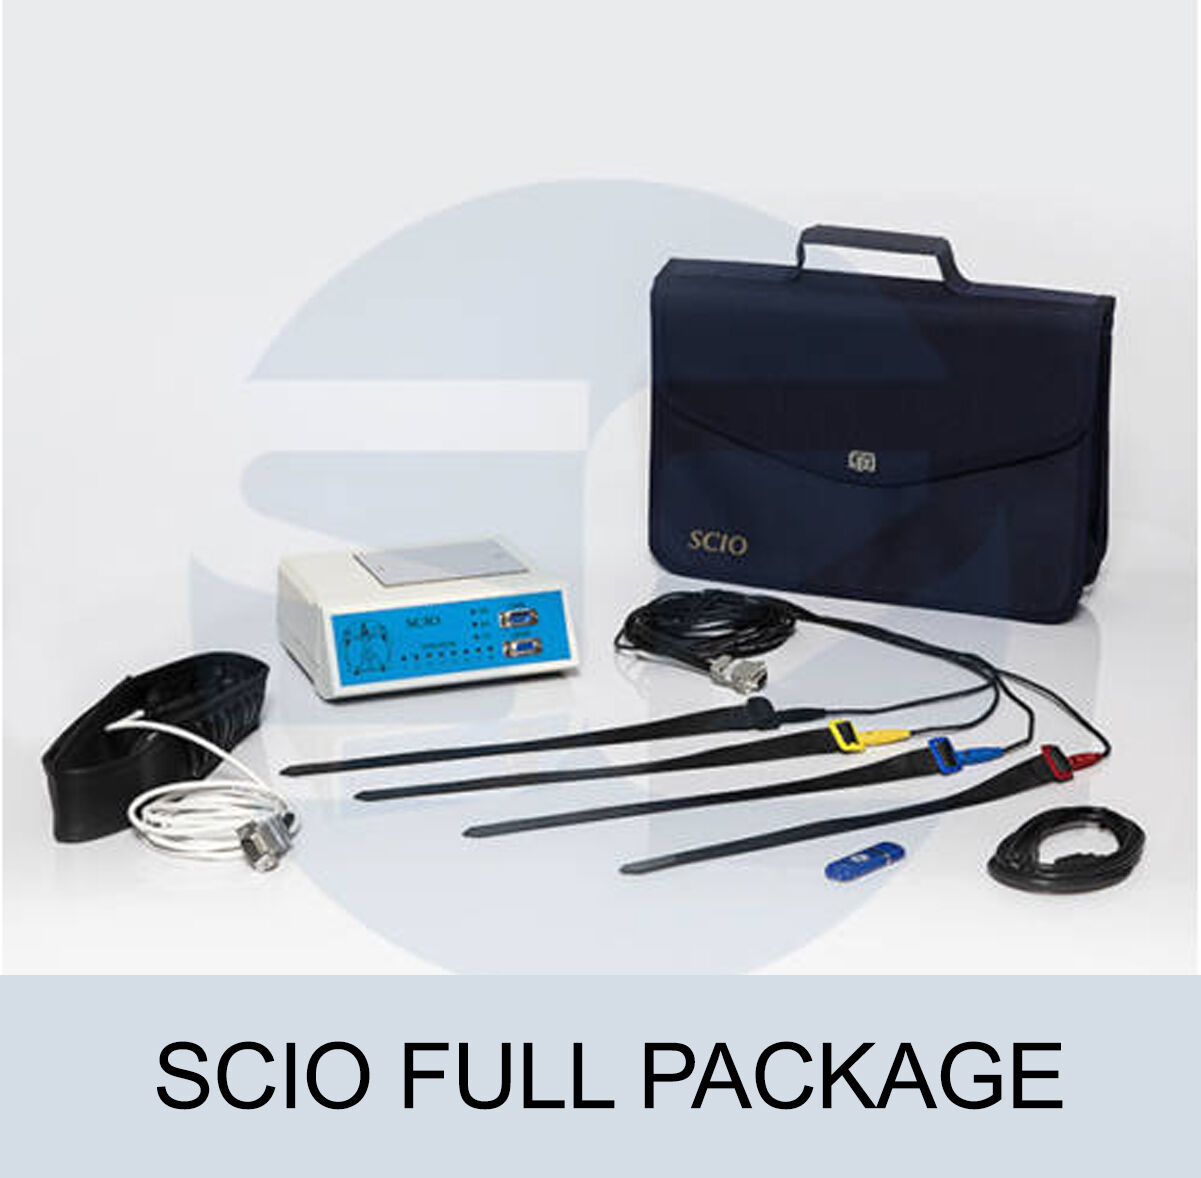 SCIO Full Package